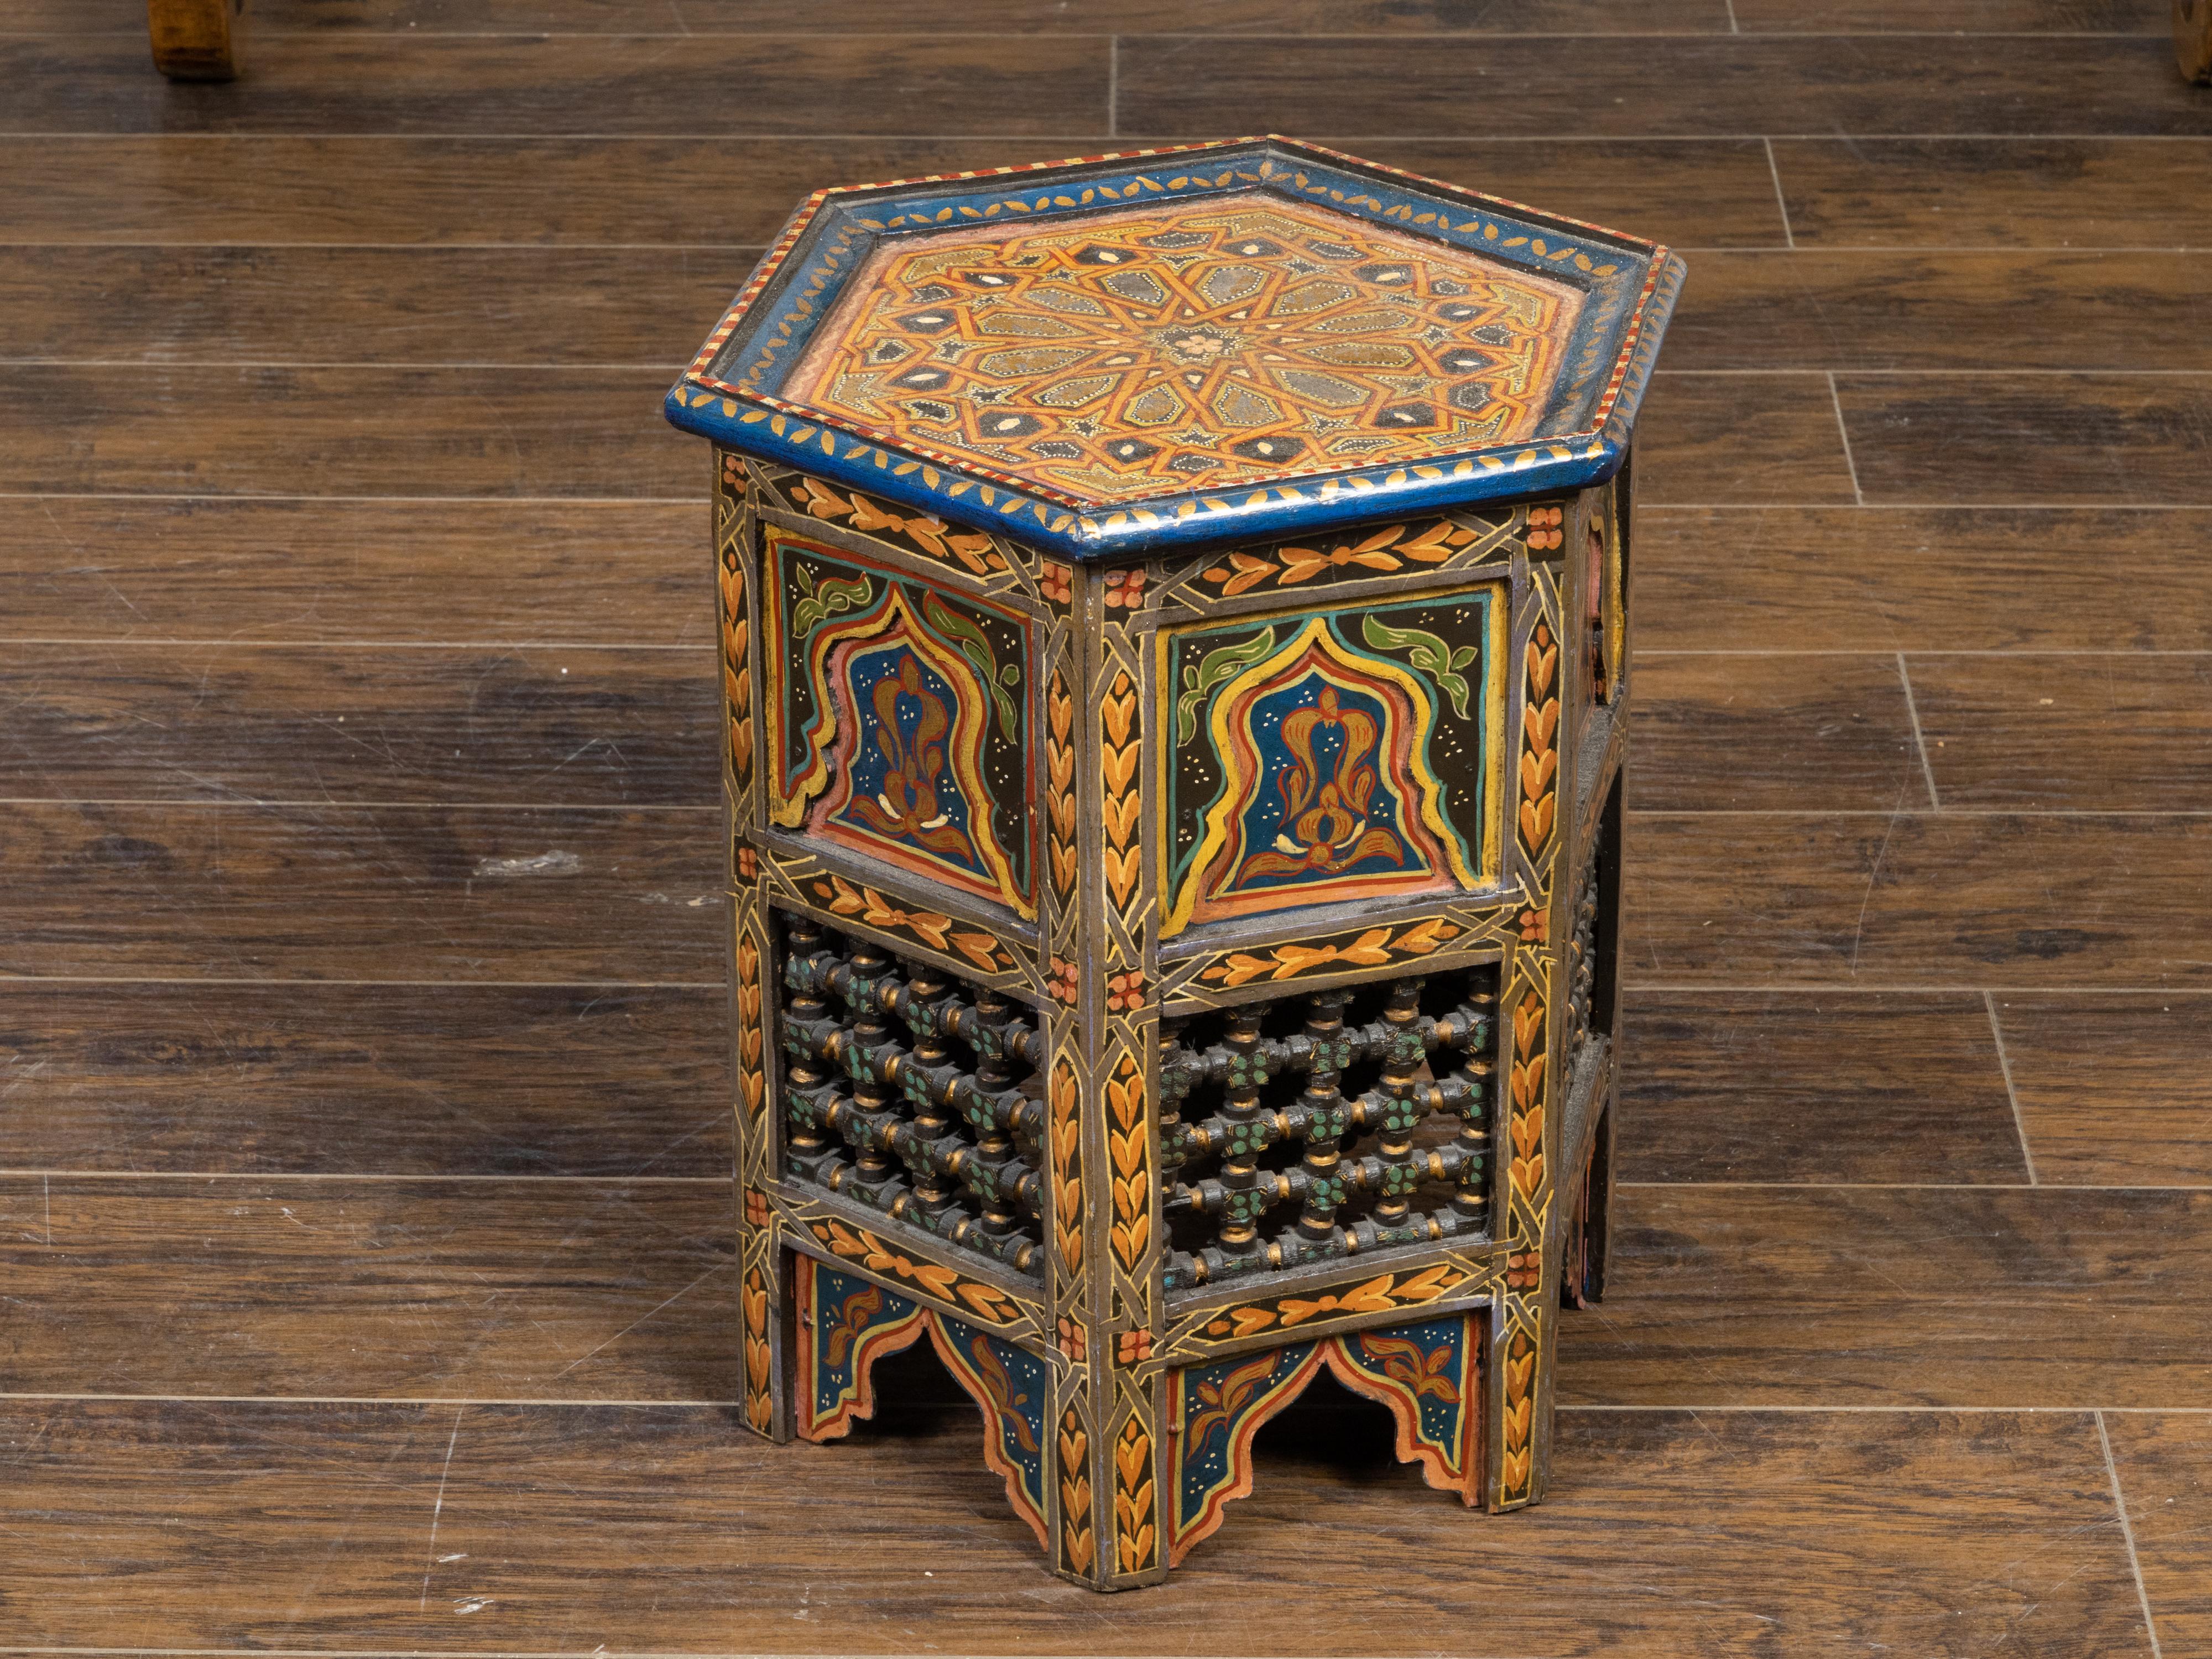 Ein marokkanischer Getränketisch im maurischen Stil aus dem frühen 20. Jahrhundert, mit gemalten geometrischen Motiven, sechseckiger Platte, polychromem Dekor und geschnitzten durchbrochenen Motiven. Dieser zierliche Beistelltisch, der im ersten